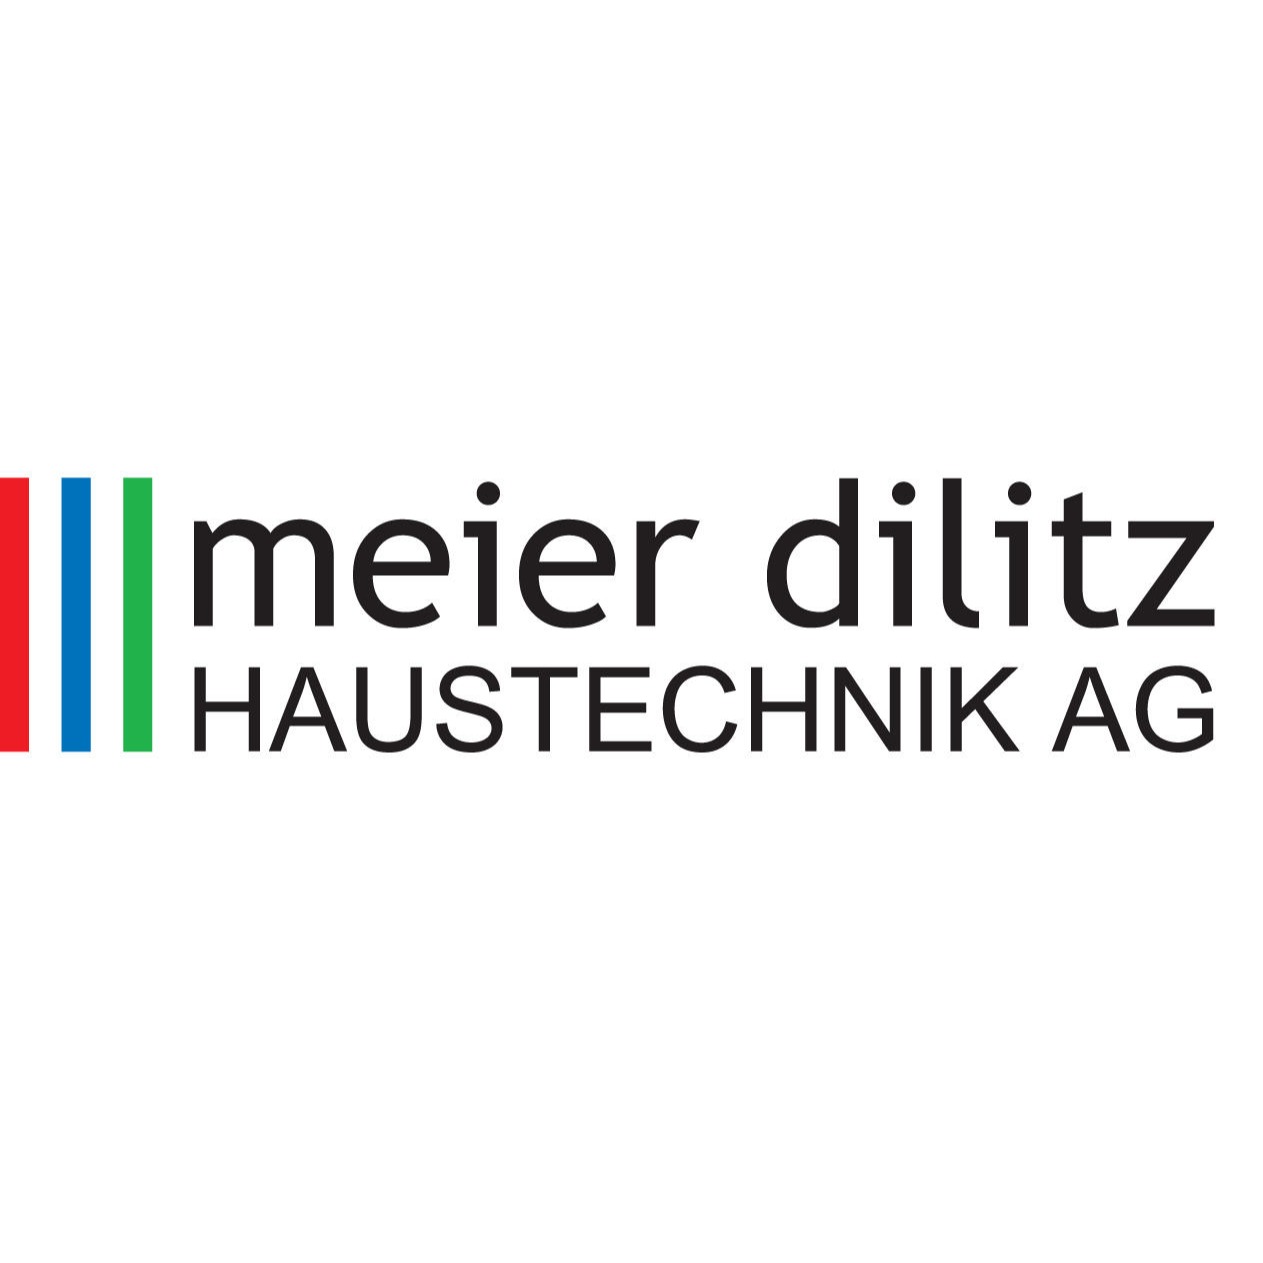 Meier + Dilitz Haustechnik AG